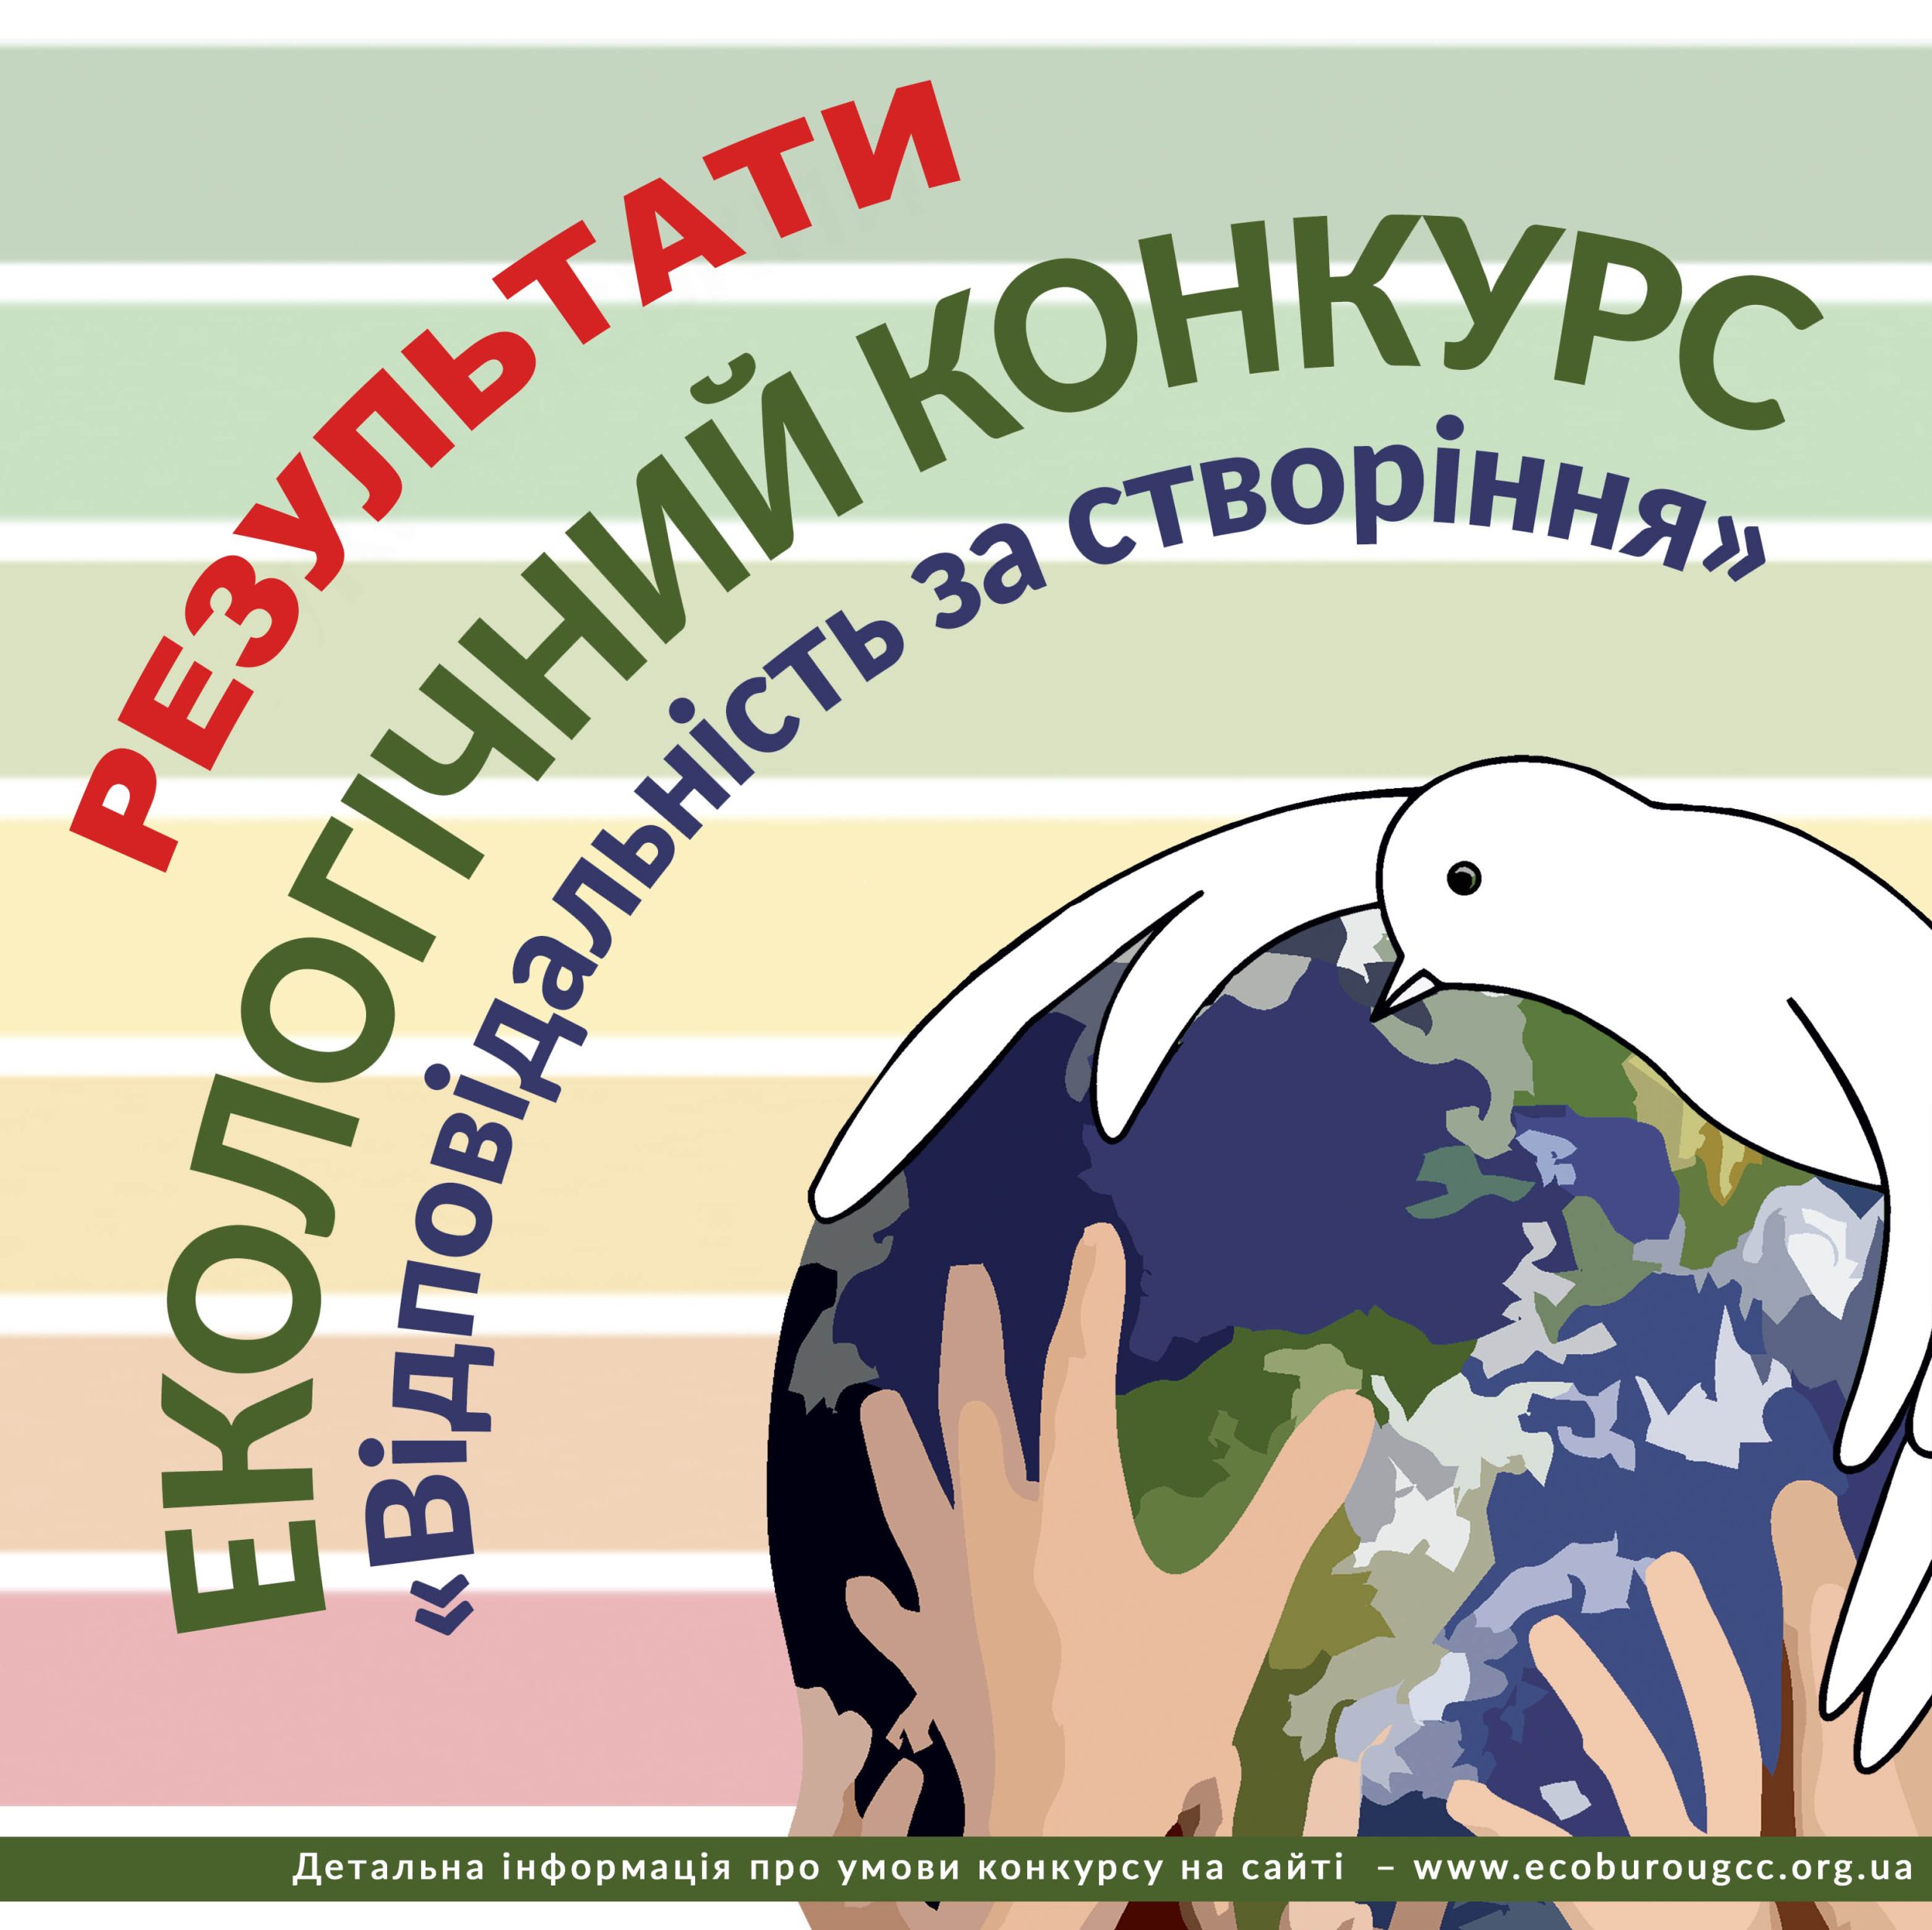 Результати Всеукраїнського екологічного конкурсу «Відповідальність за створіння» на тему енергоефективності та енергозбереження